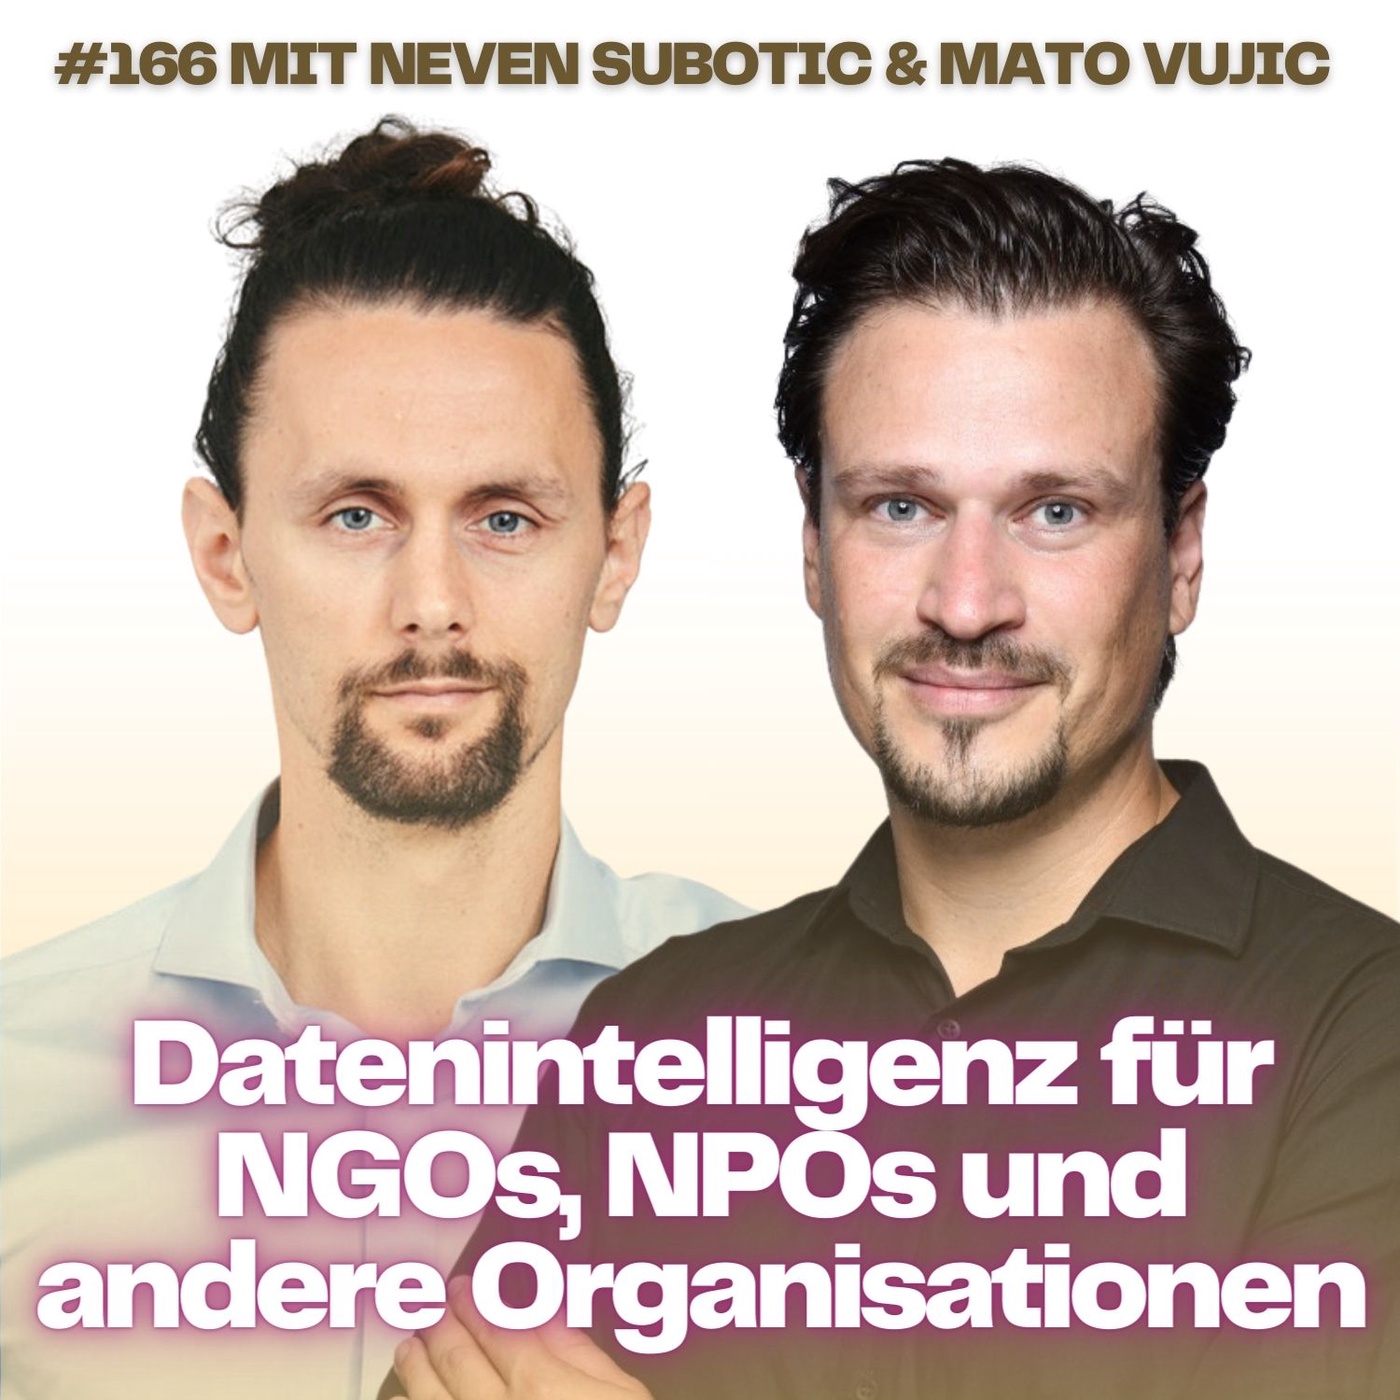 #166 mit Neven Subotic & Mato Vujic | Datenwertschöpfung für NGOs, NPOs und andere Organisationen